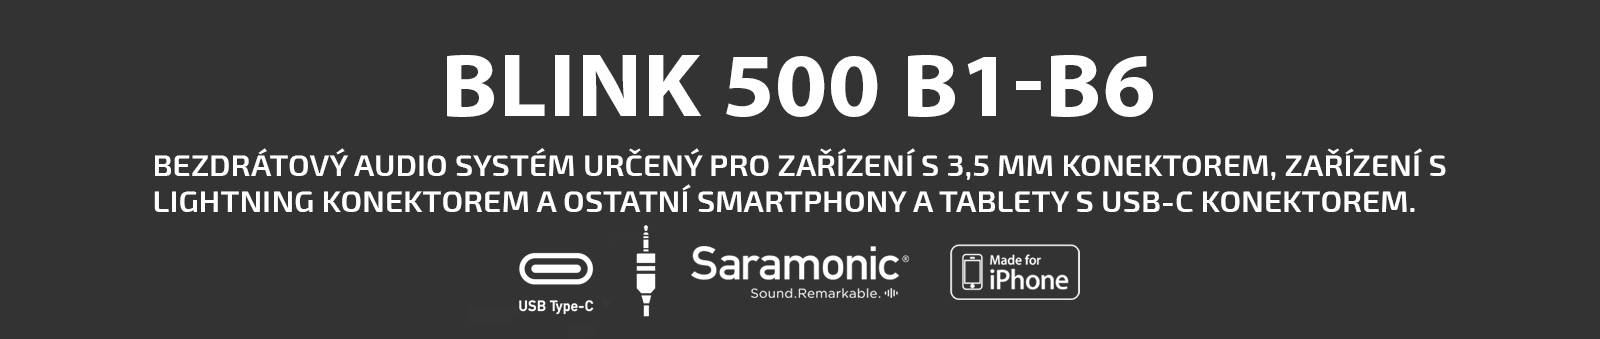 film-technika-blink-500-banner